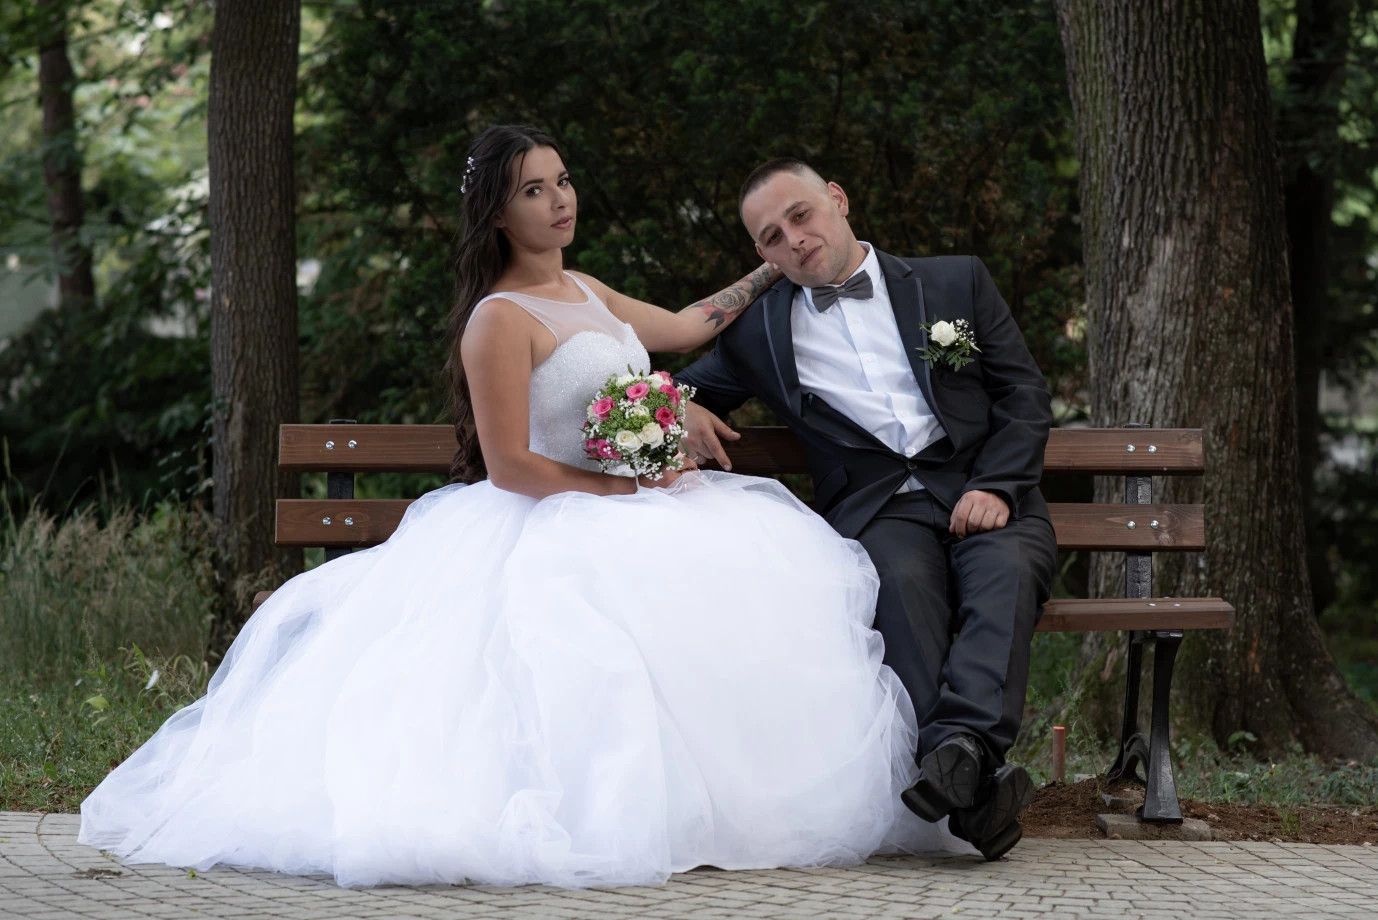 fotograf skrzyszow szalona-klatka portfolio zdjecia slubne inspiracje wesele plener slubny sesja slubna